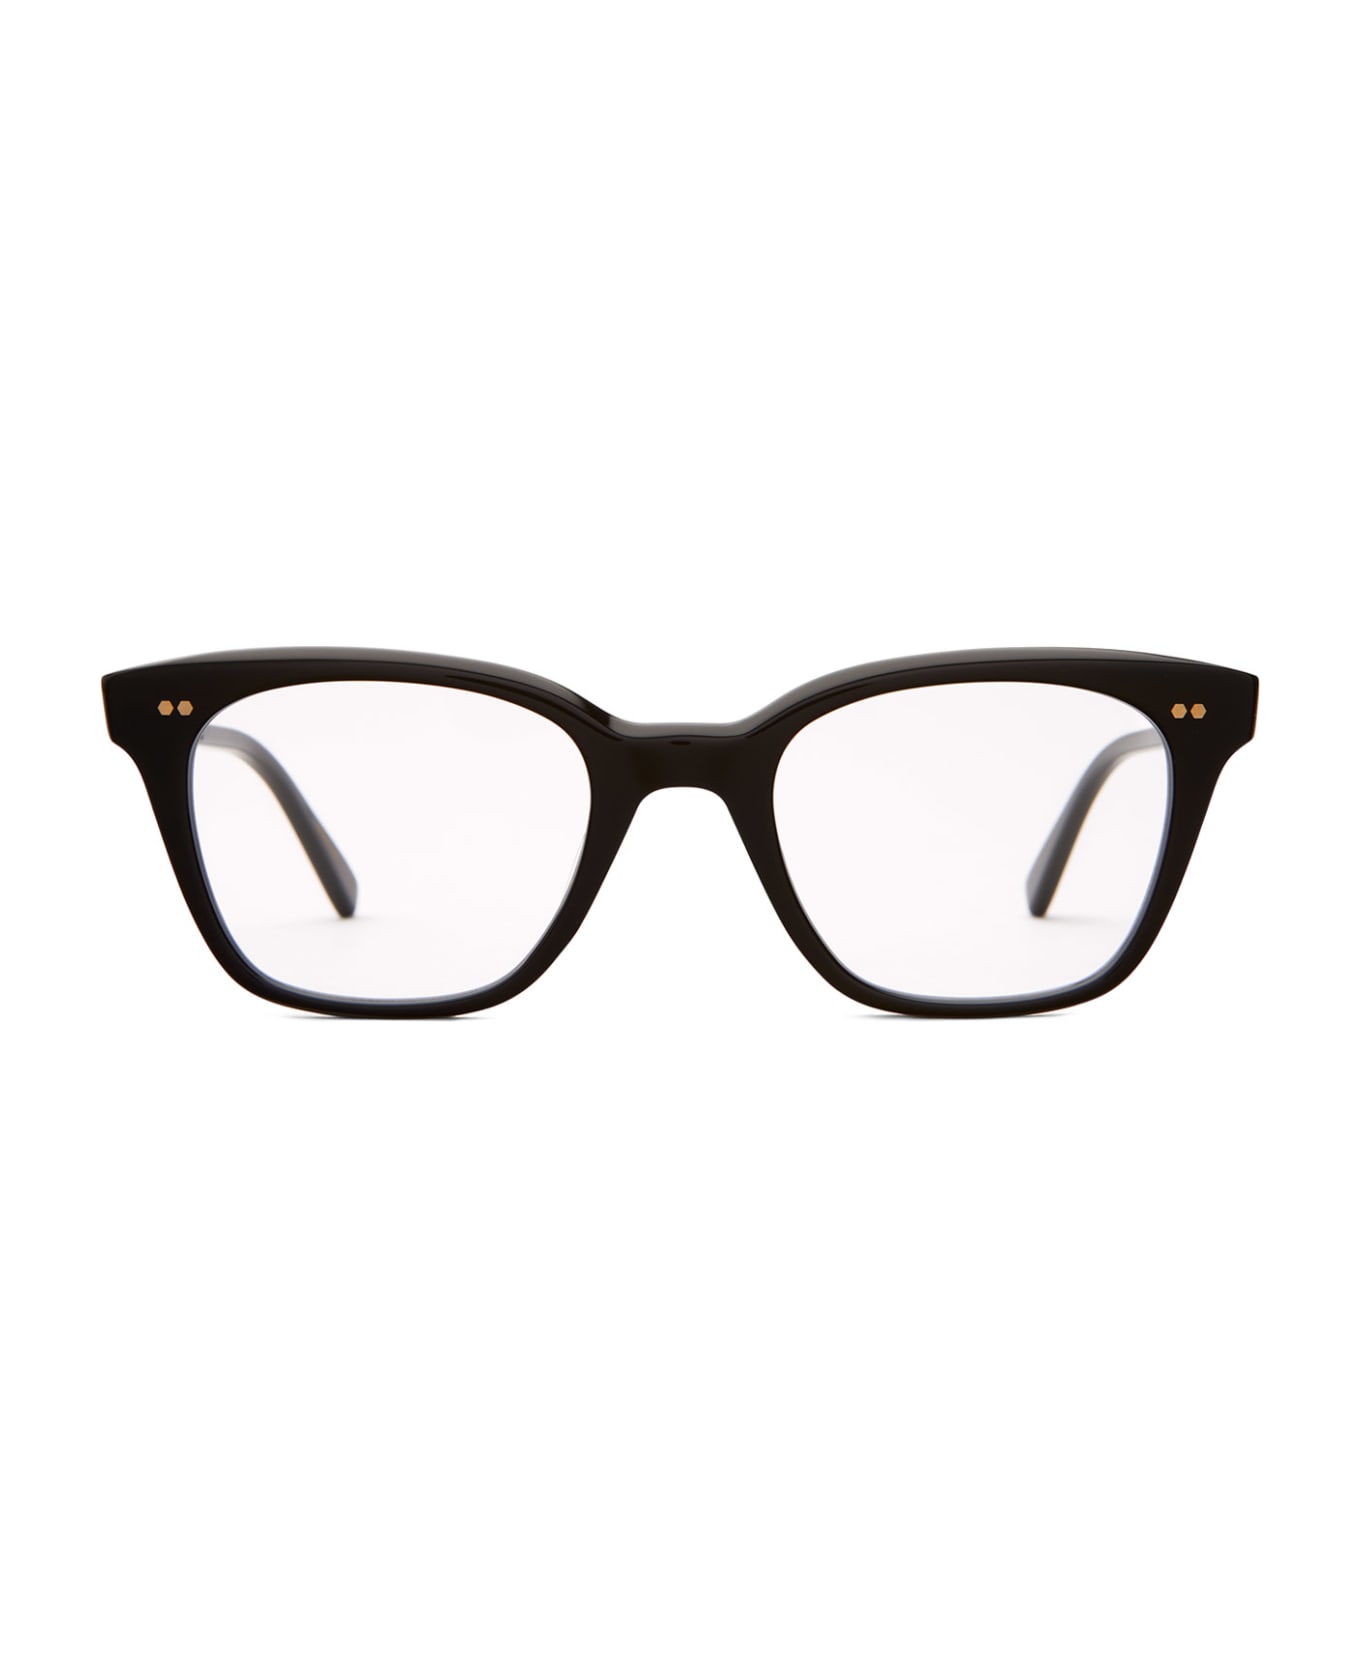 Mr. Leight Morgan C Black-12k White Gold Glasses - Black-12K White Gold アイウェア